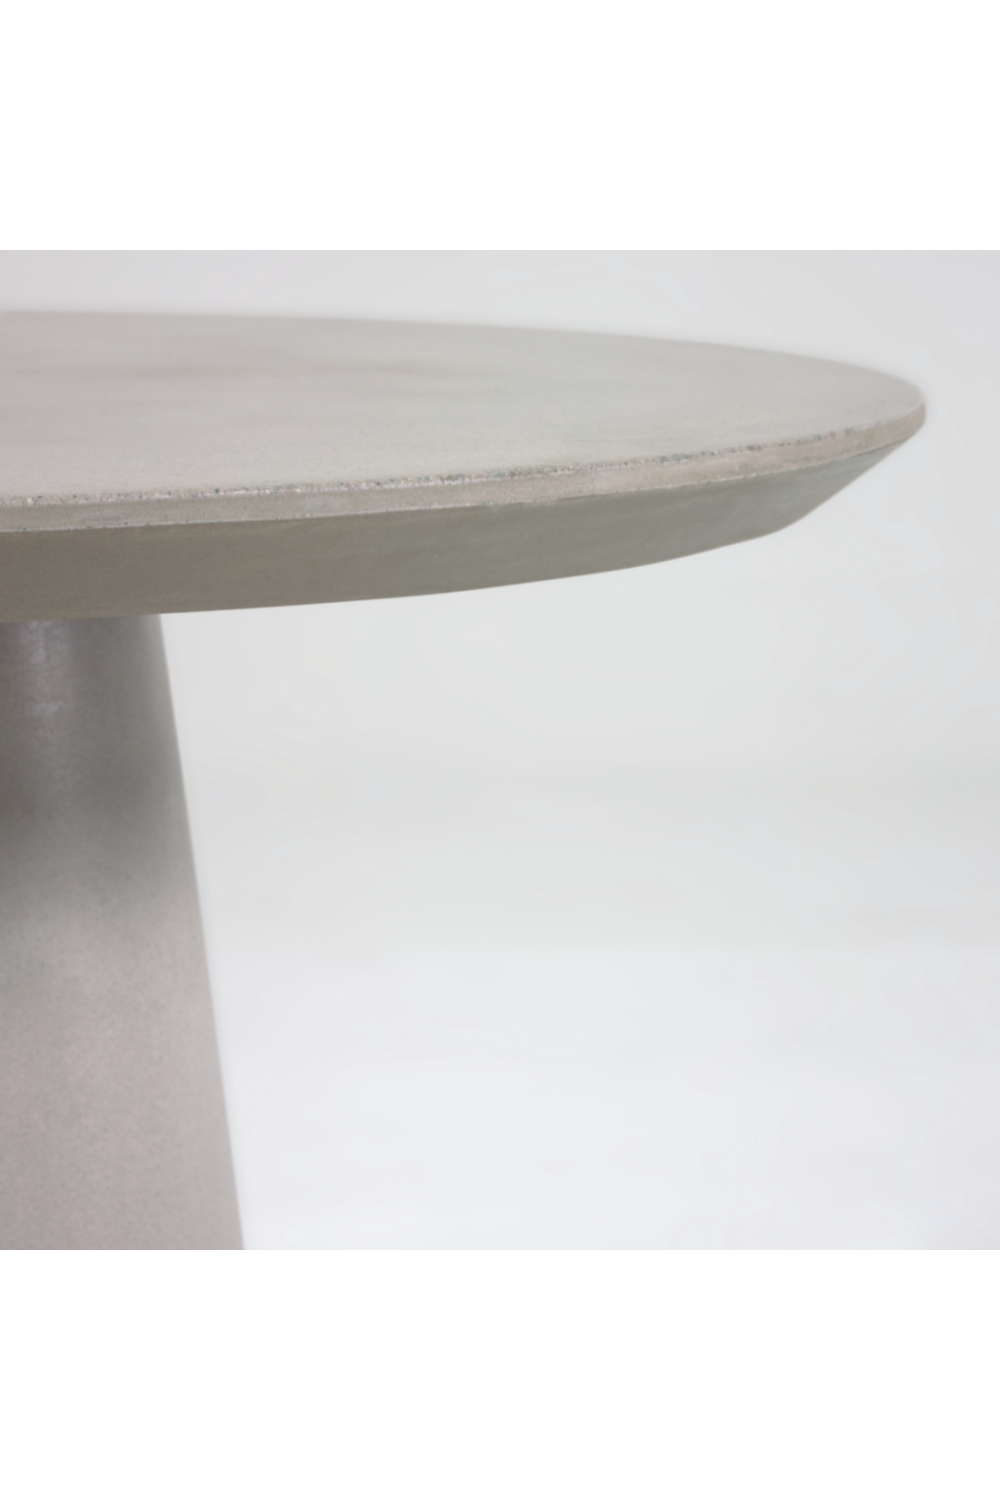 Round Cement Pedestal Outdoor Table S | La Forma Itai | Oroa.com